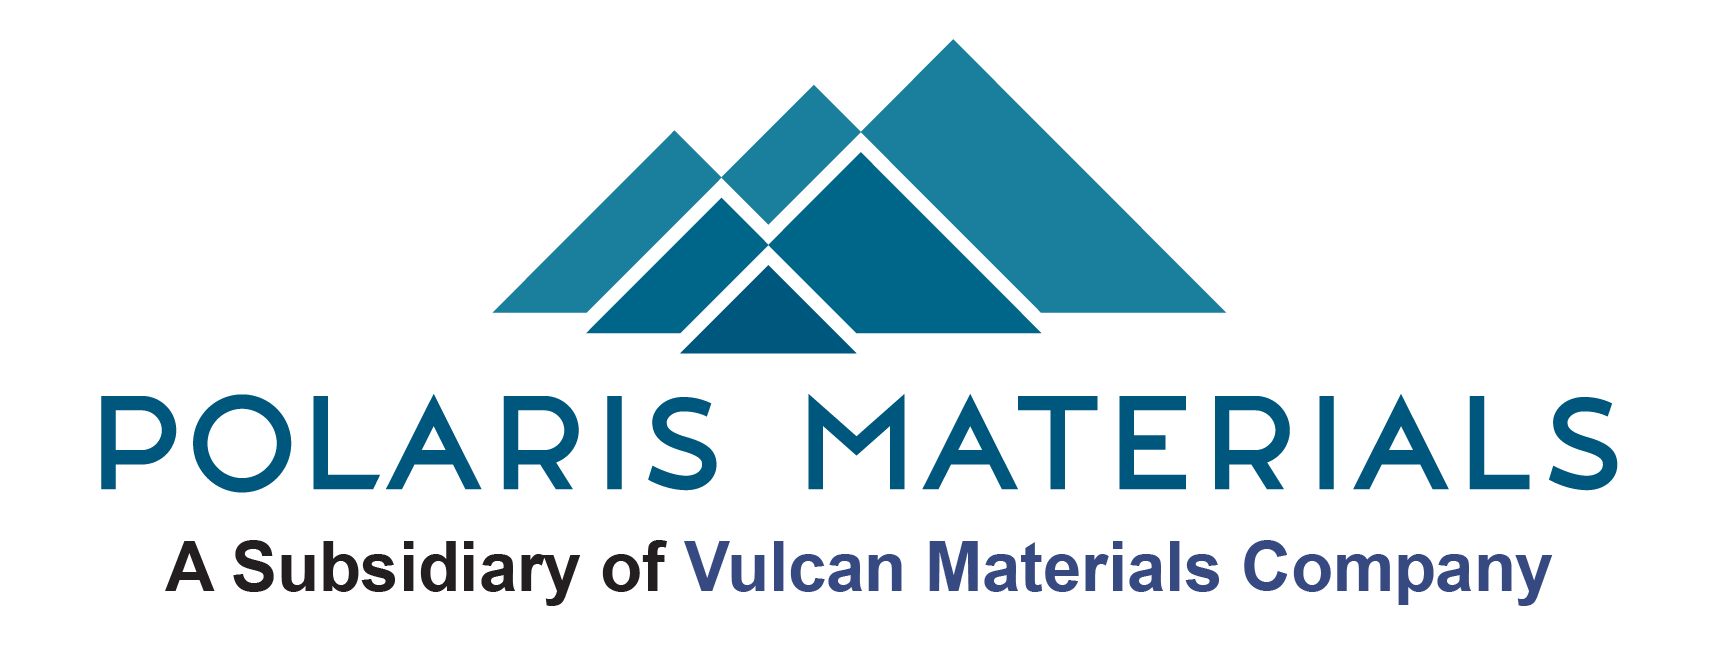 Polaris Materials